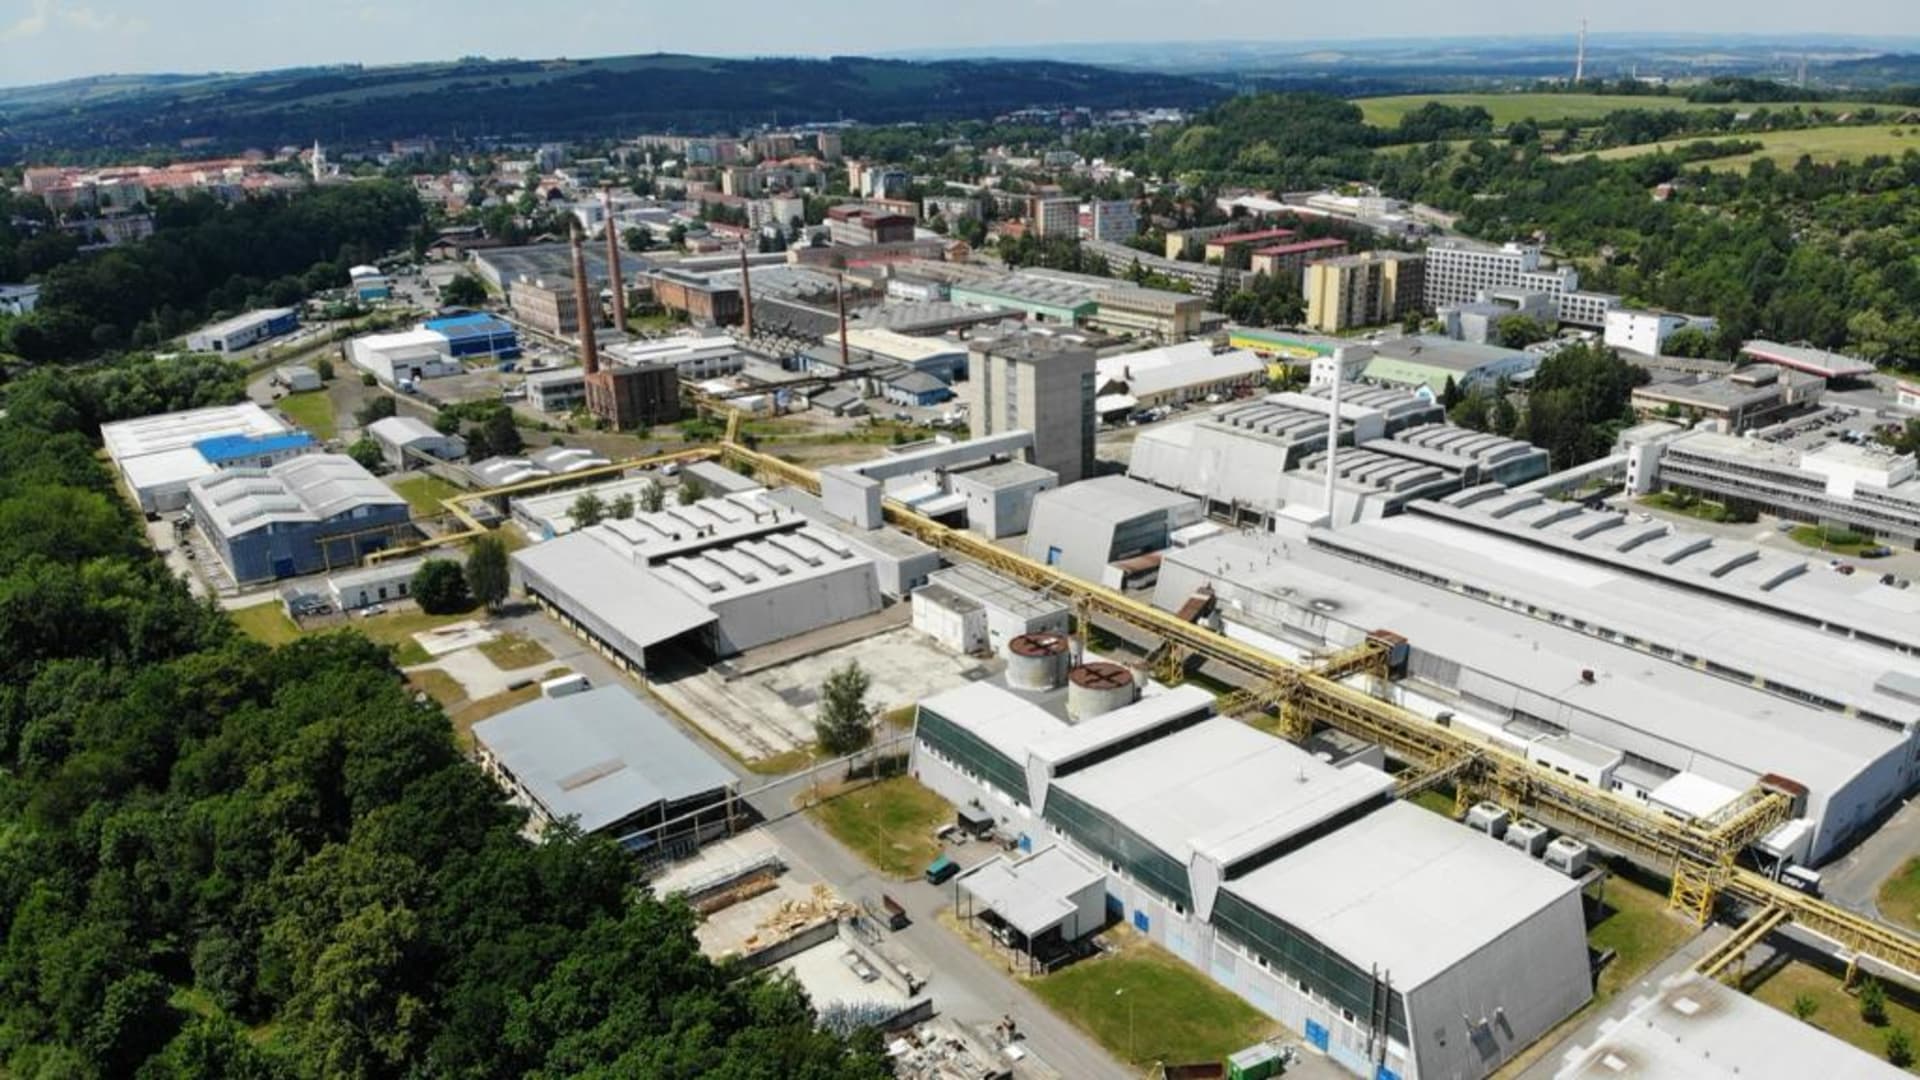 SCHOTT Valmez  Průmyslový areál výrobní společnosti Schott ve Valašském Meziříčí